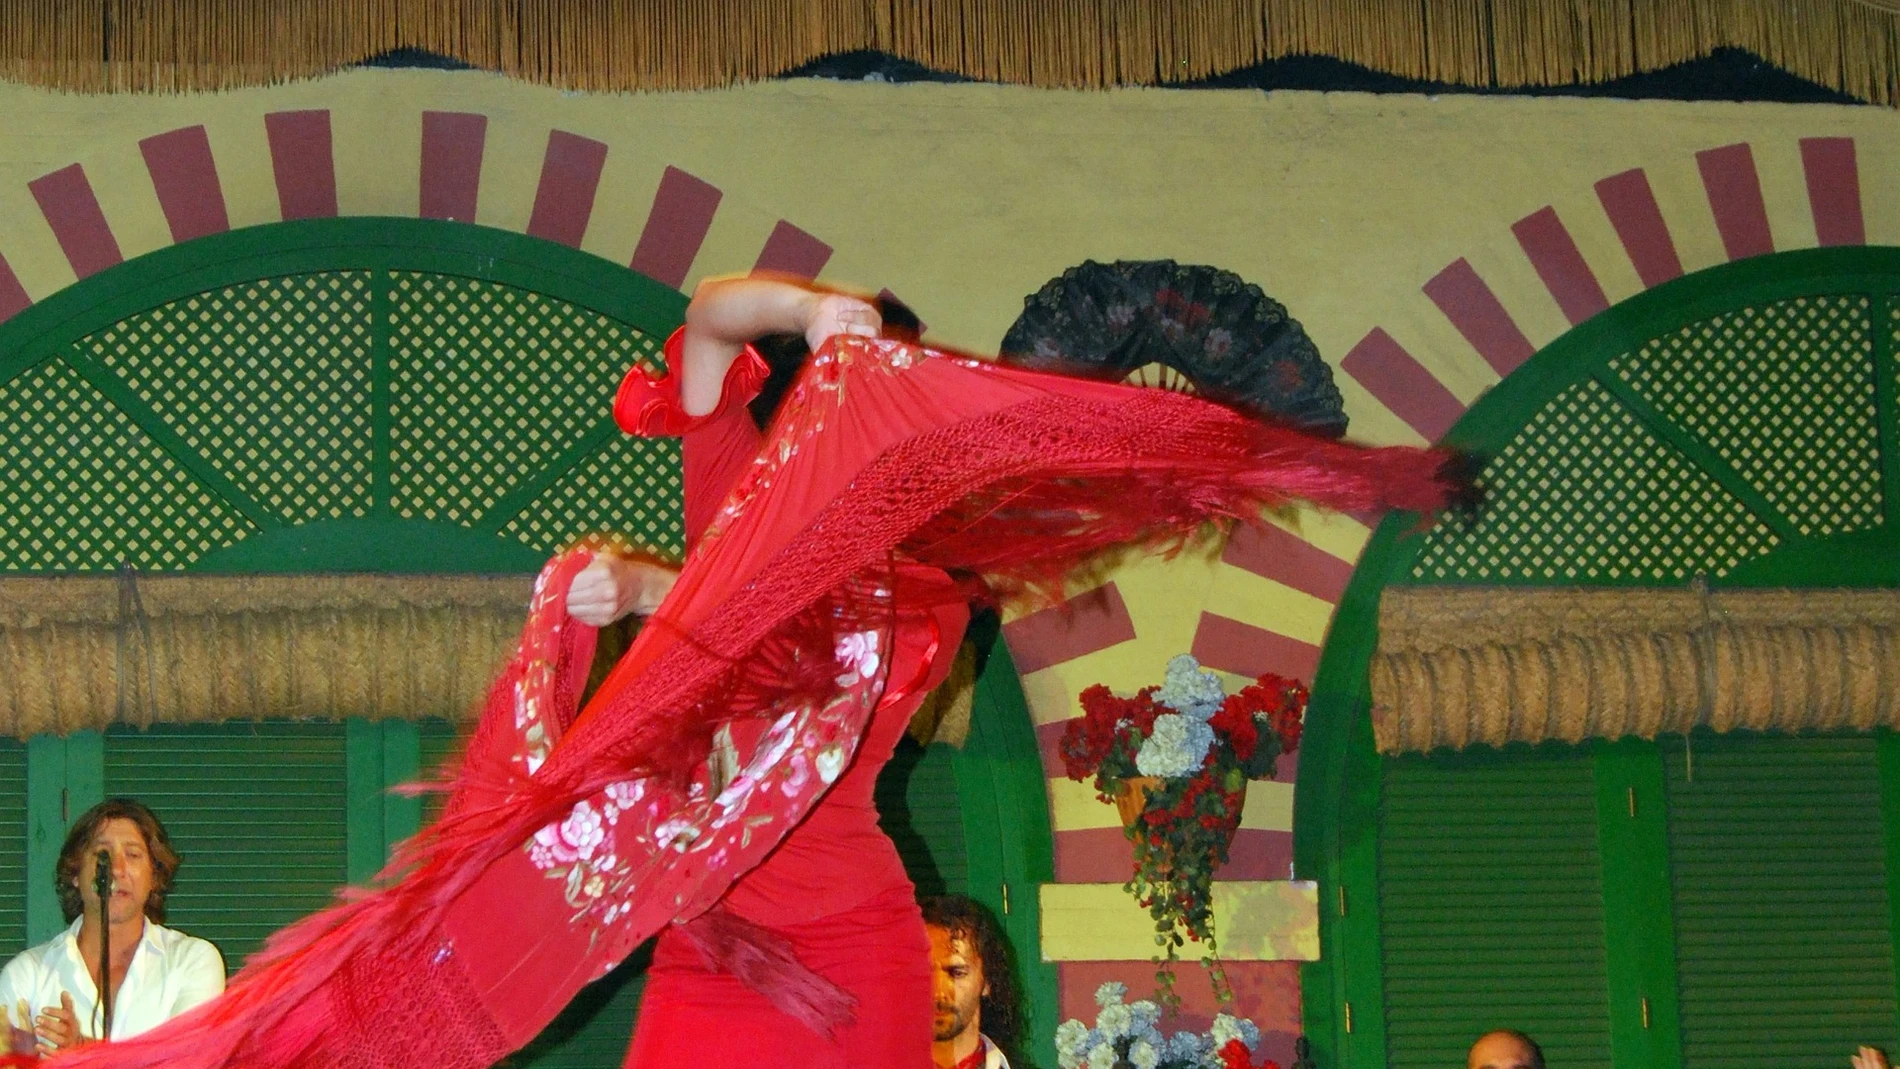 Una mujer bailando flamenco 